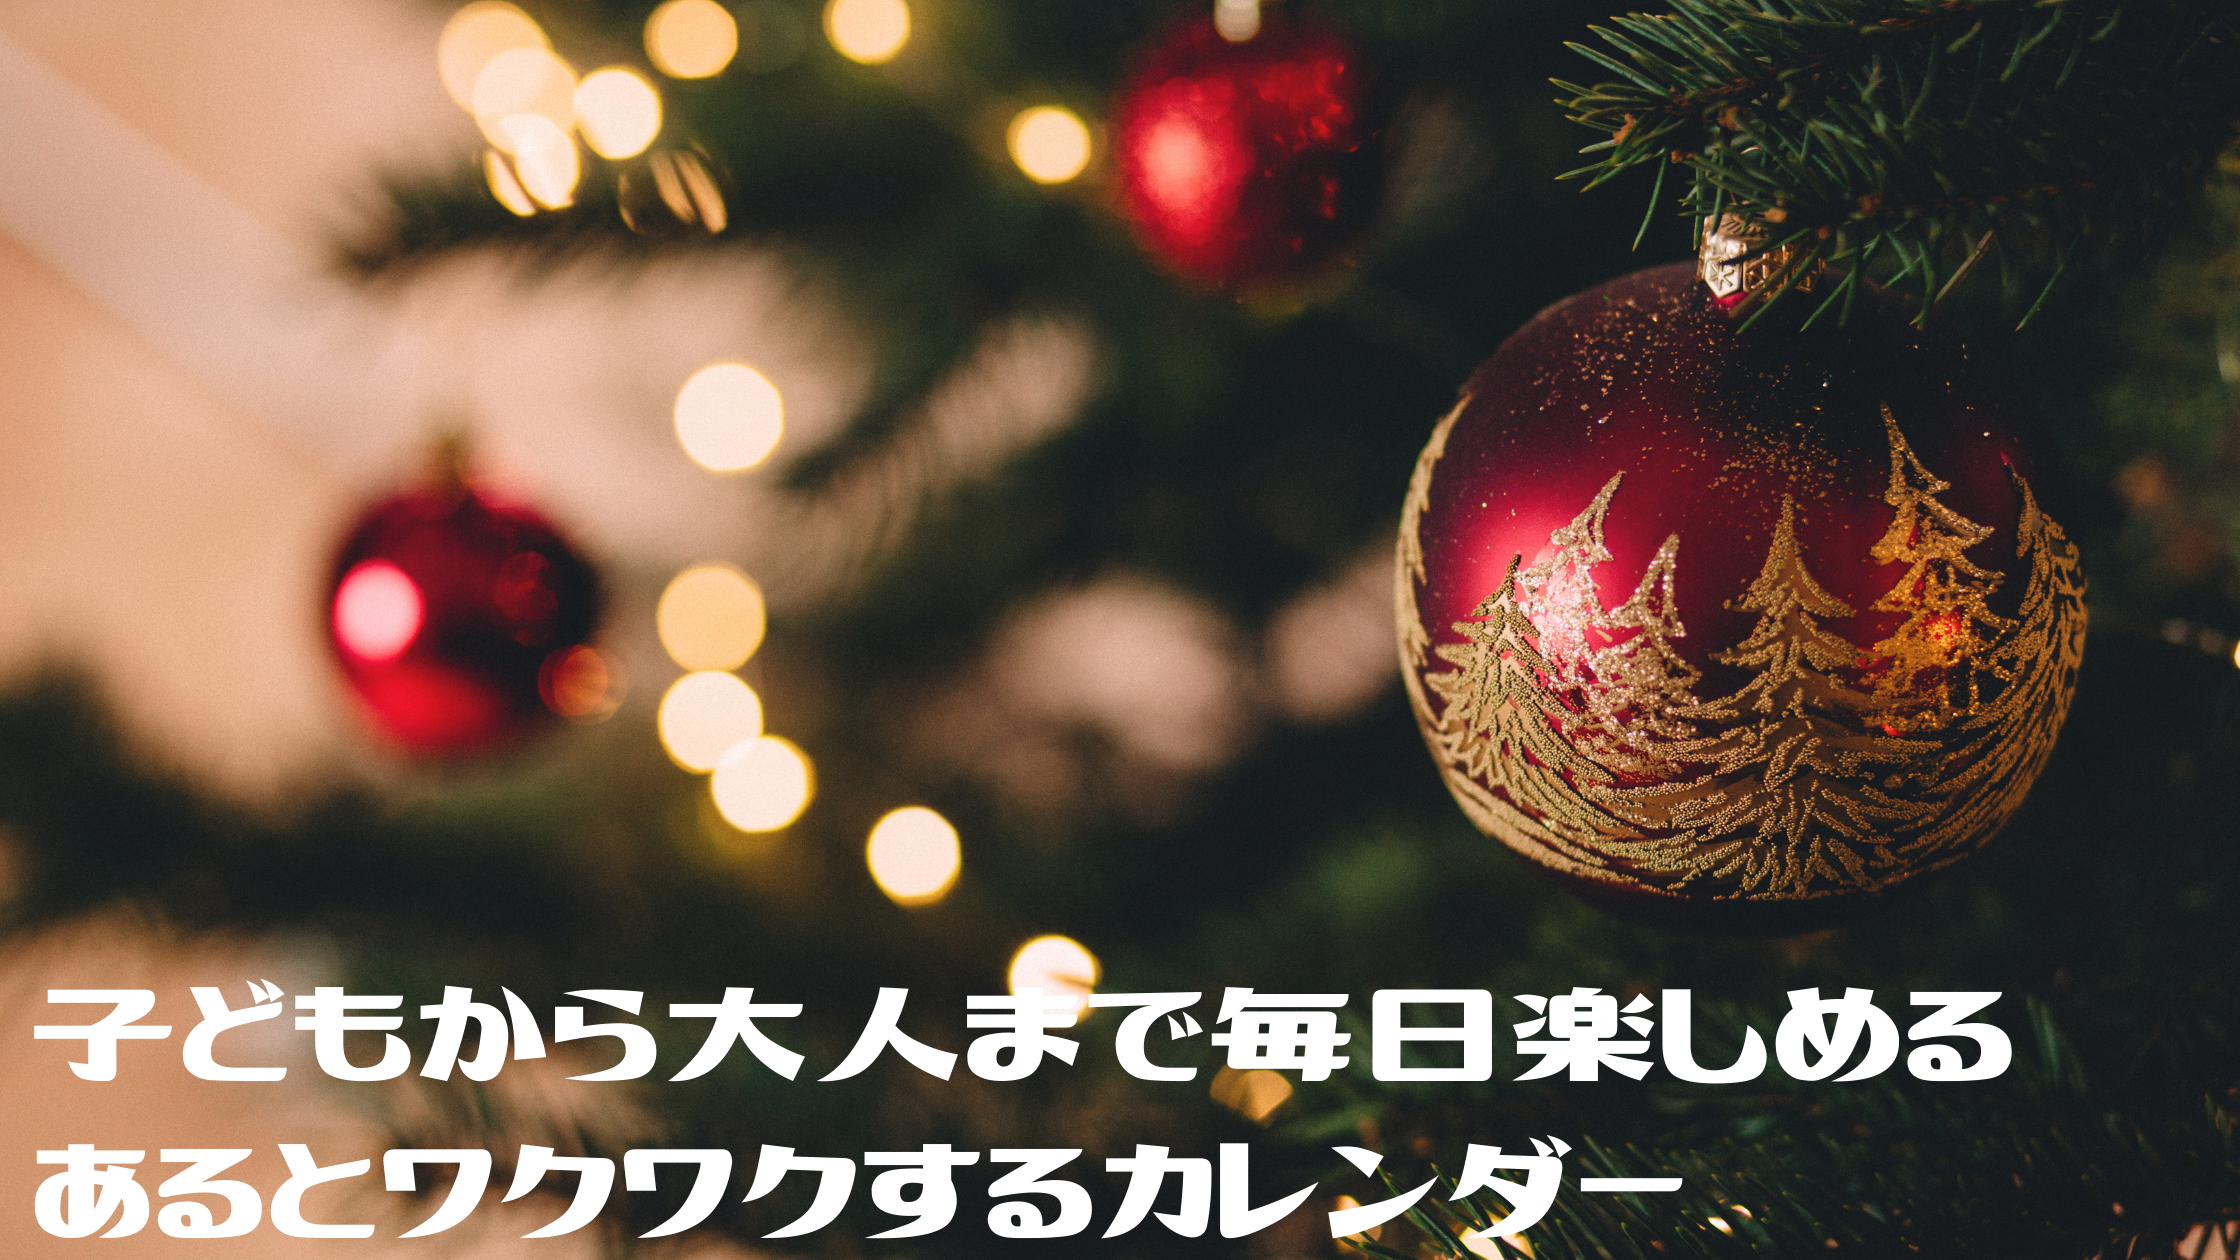 【めざましテレビ】クリスマスまで楽しめる『お菓子・ビール・紅茶』のアドベントカレンダー